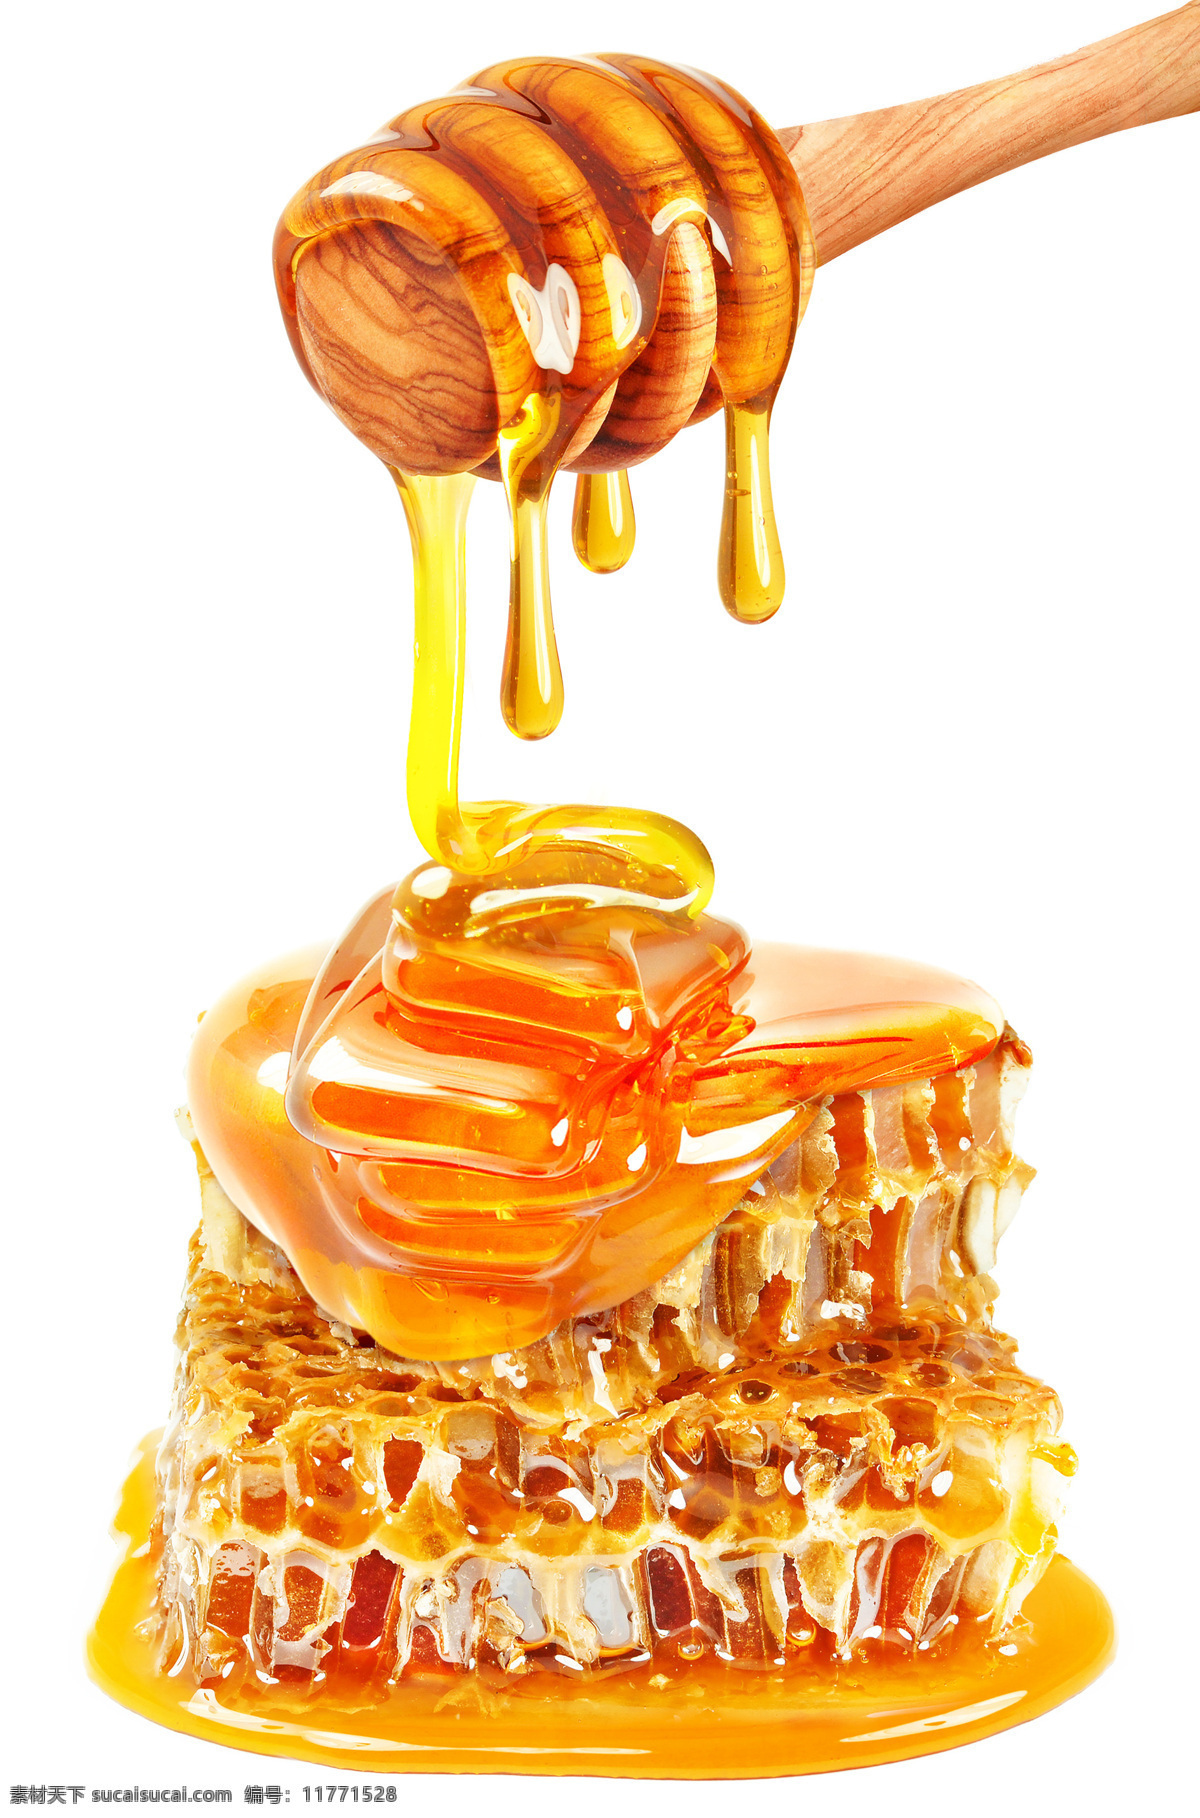 花蜜 蜜糖 蜂蜜水 天然蜂蜜 手工蜂蜜 手工花蜜 天然花蜜 蜂窝蜜 纯天然蜂蜜 纯手工蜂蜜 蜂蜜巢 蜂巢 蜂巢蜜 餐饮美食 食物原料